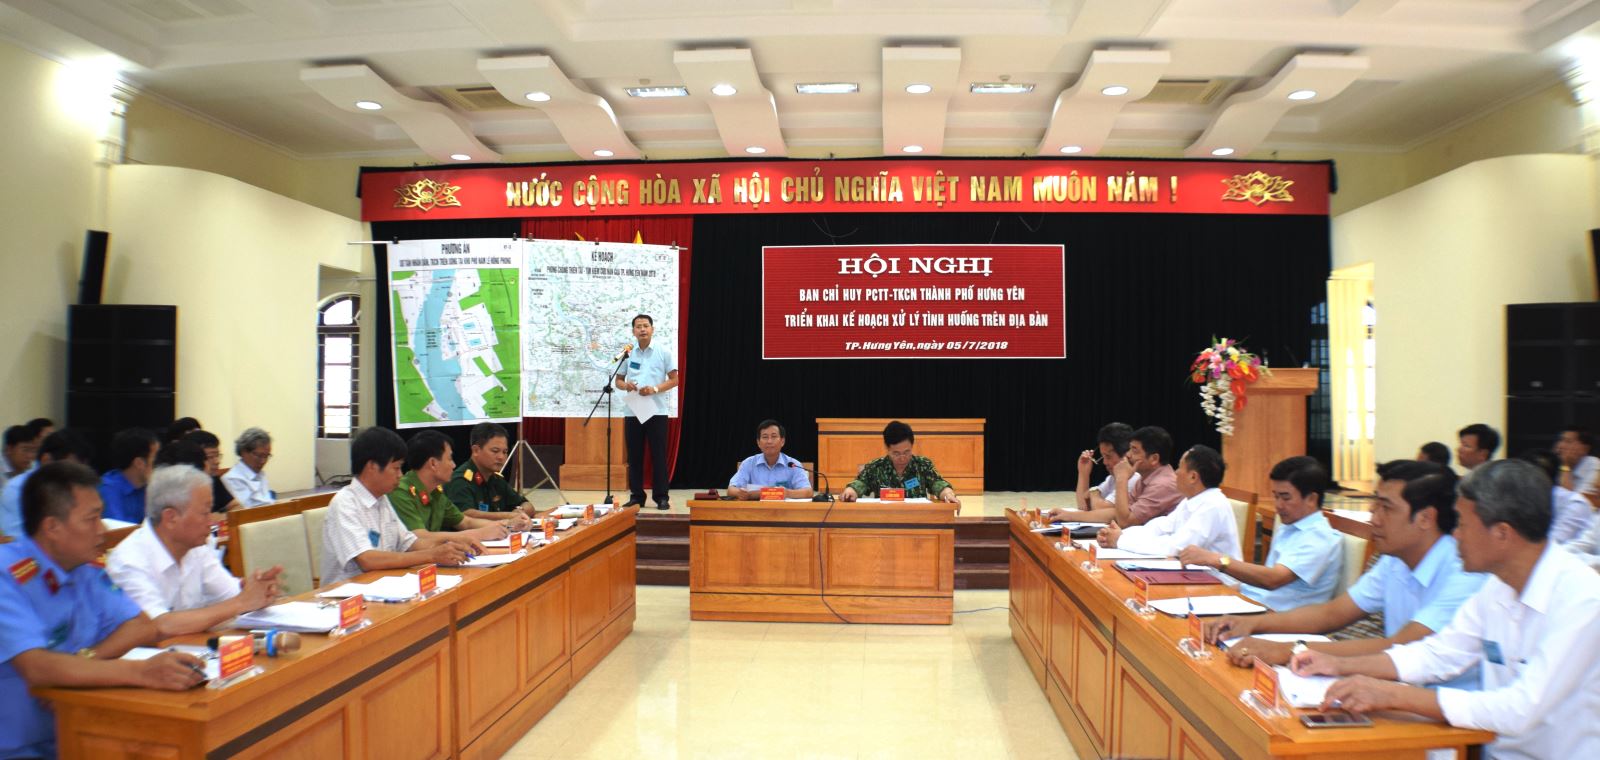 Tổ chức diễn tập phòng chống thiên tai, tìm kiếm cứu nạn thành phố Hưng Yên năm 2018